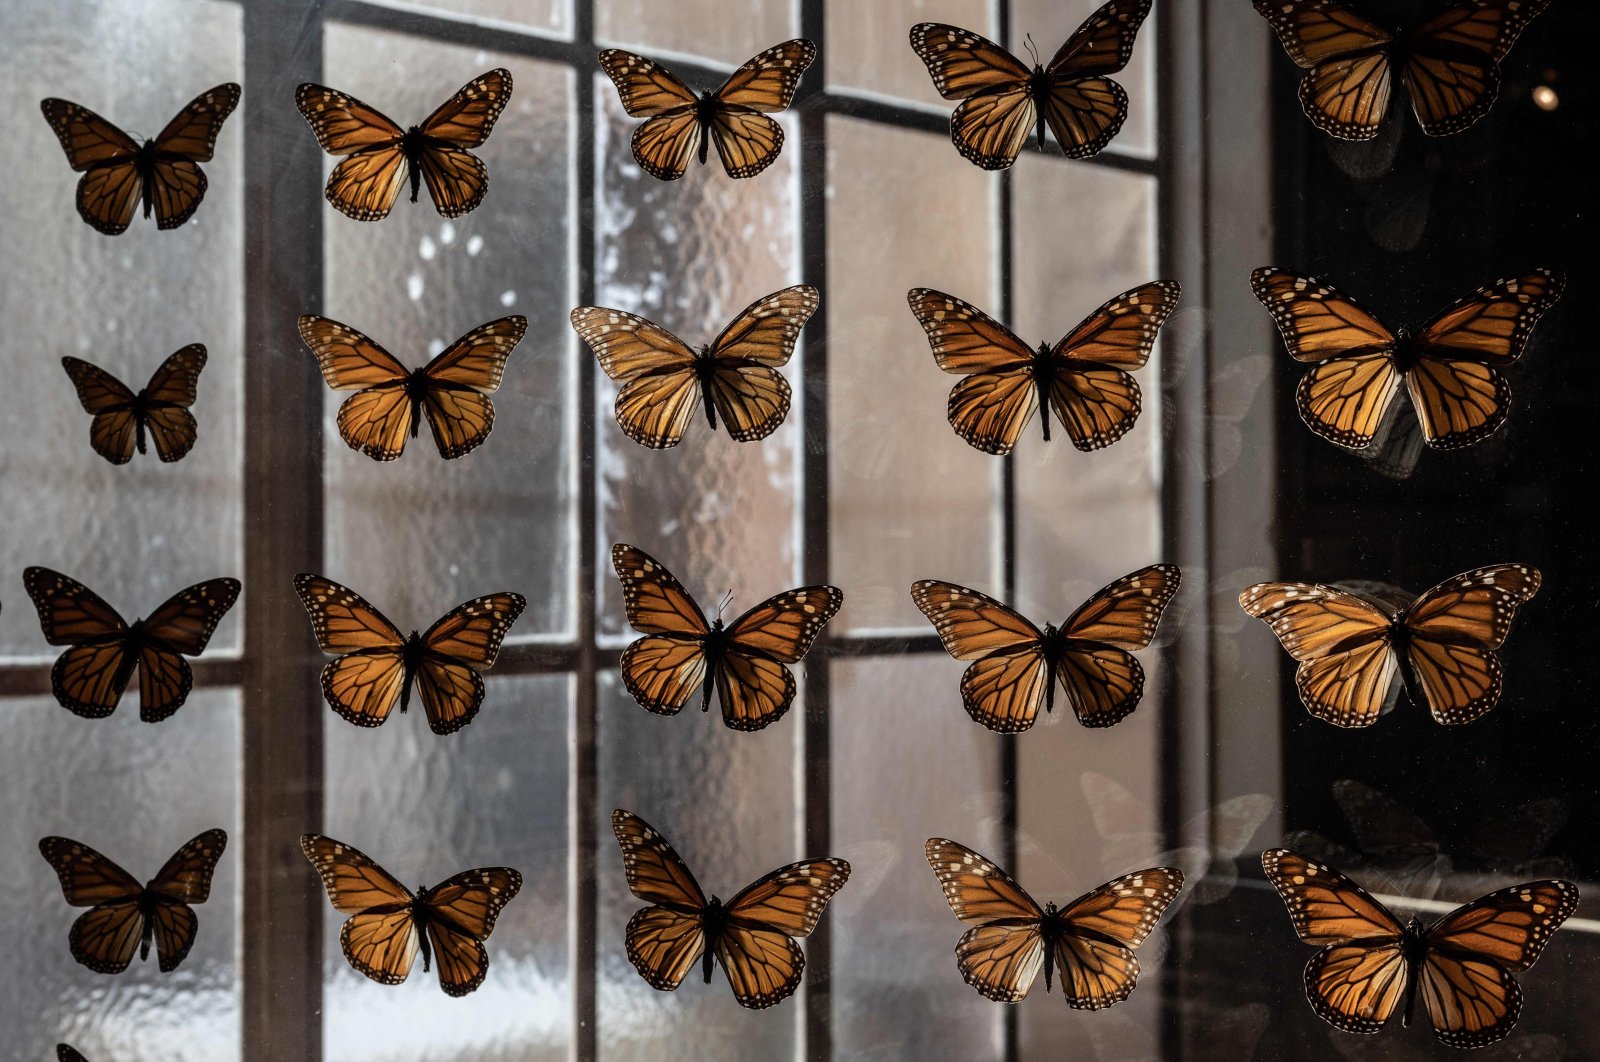 Badai AS menimbulkan bahaya bagi kupu-kupu raja yang terancam punah